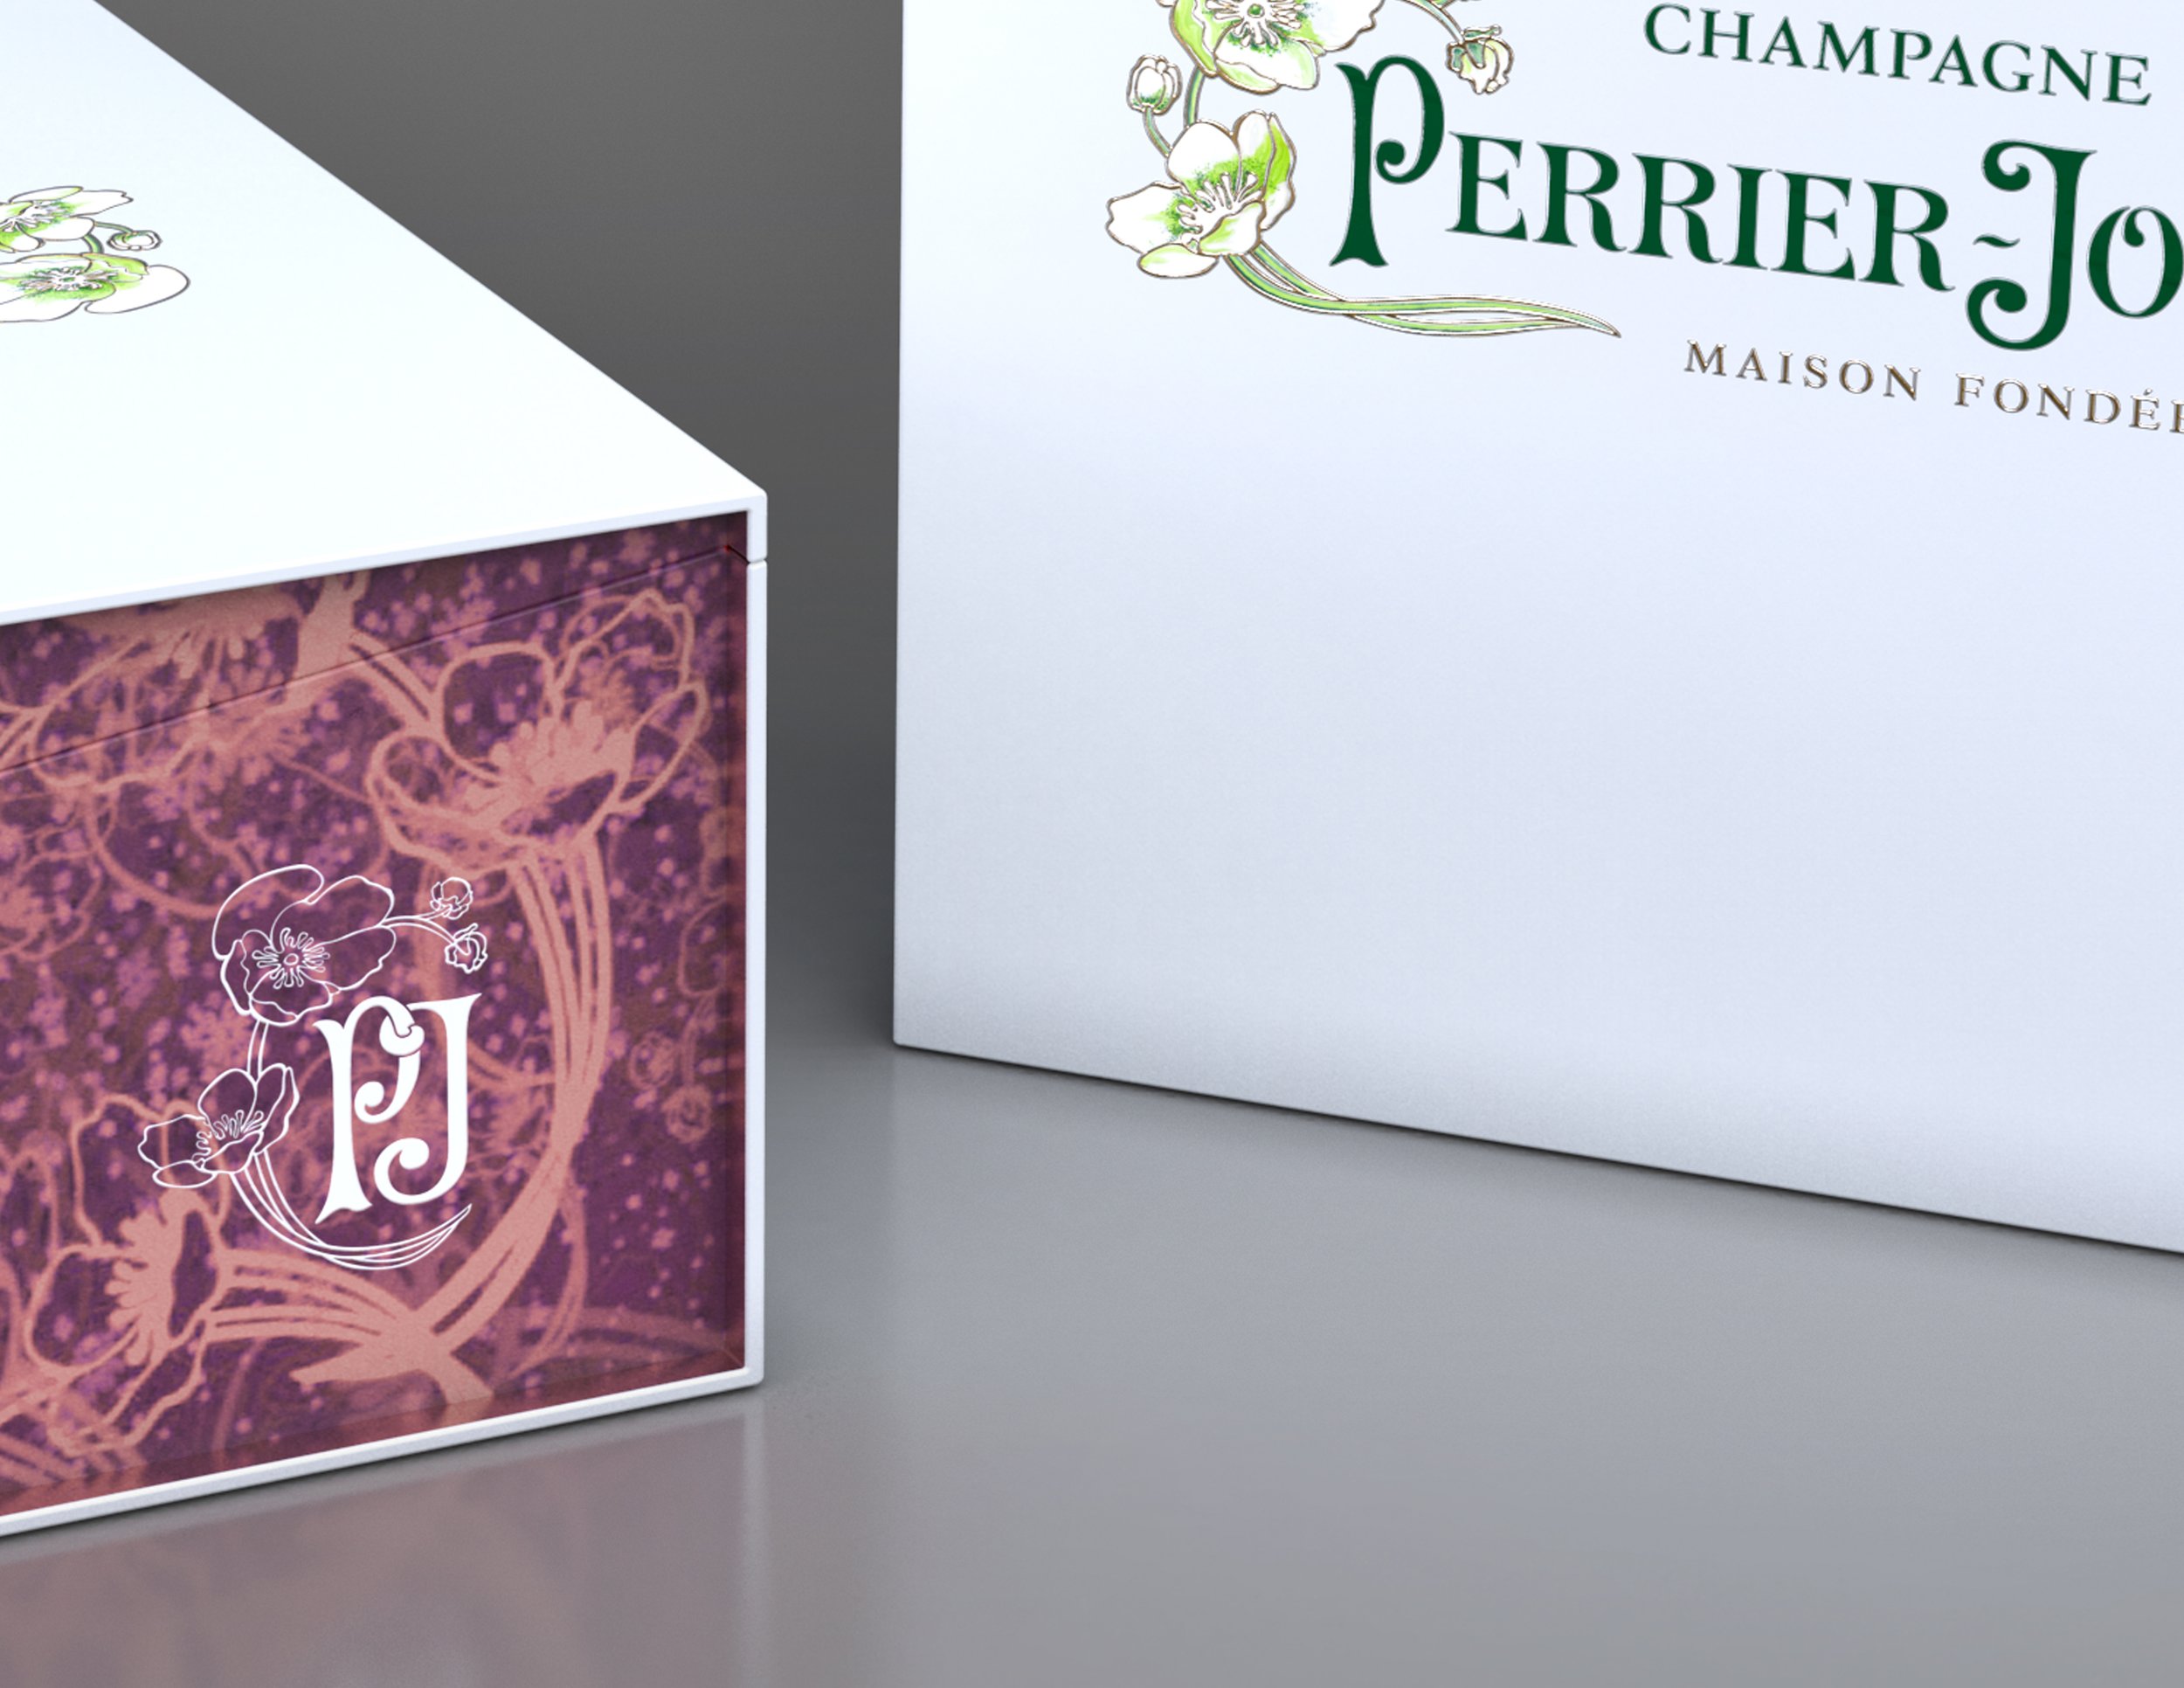 Pernod Ricard - Packaging